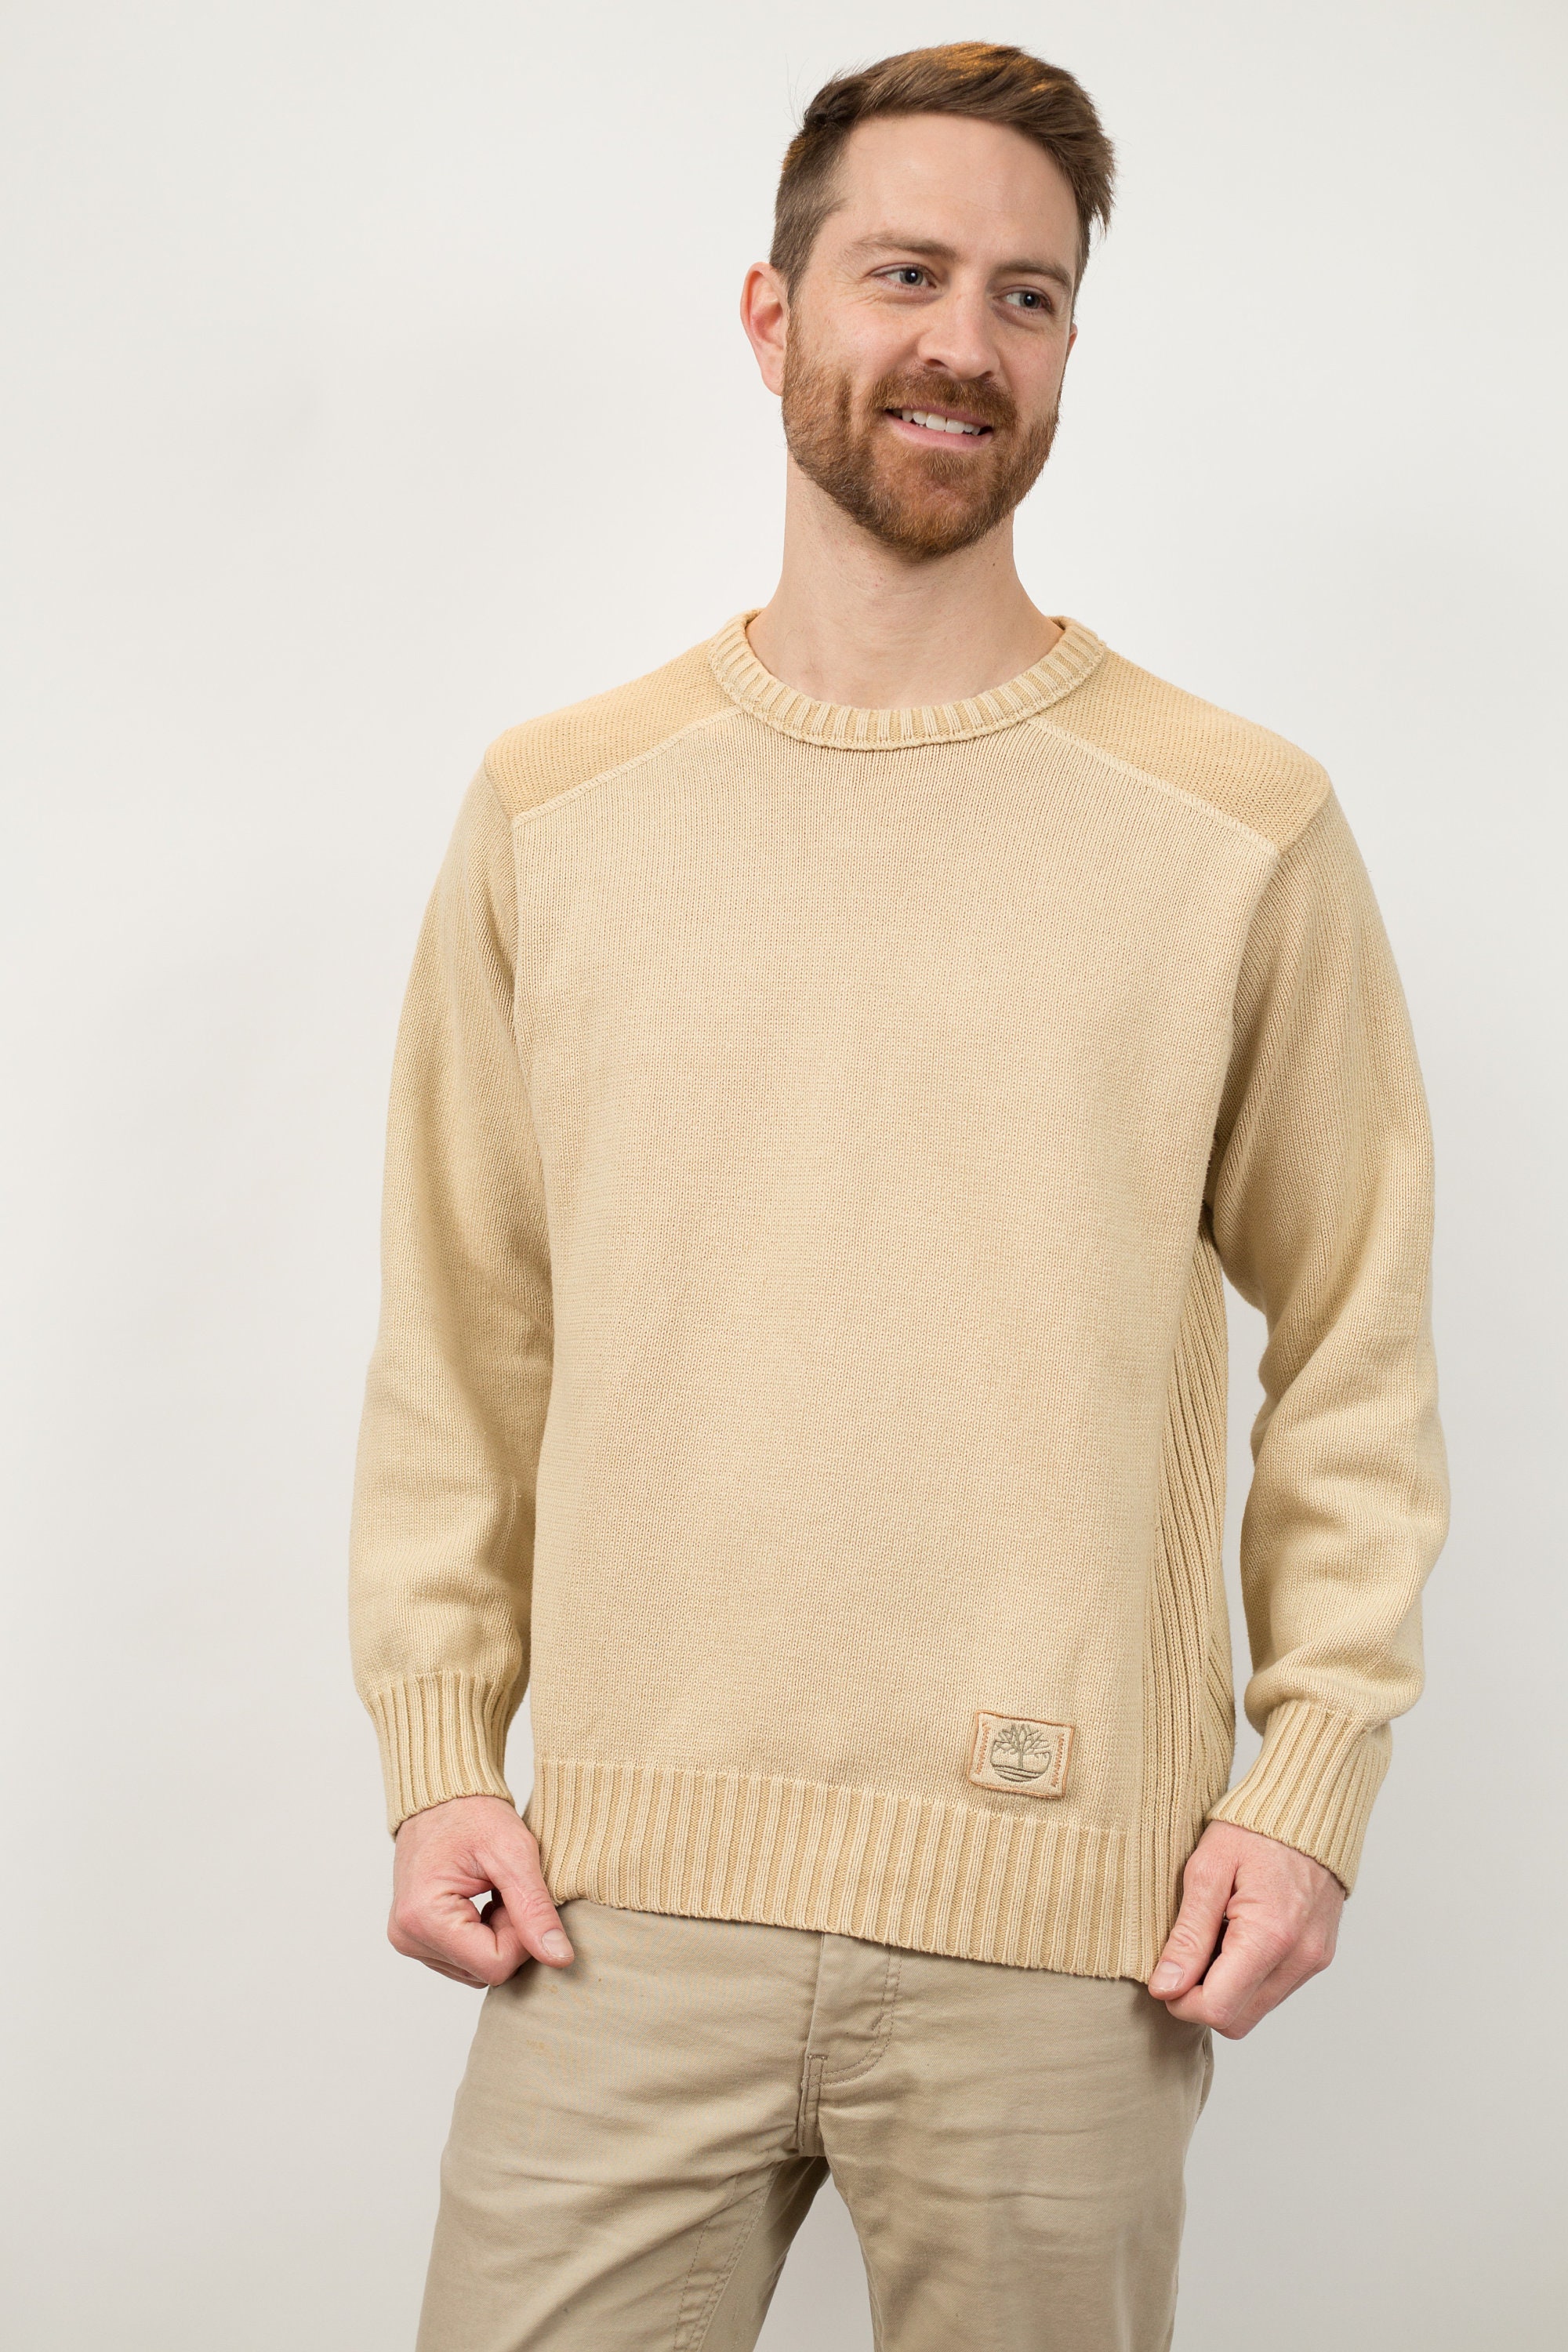 Timberland punto suéter hombres de tamaño mediano beige - Etsy España